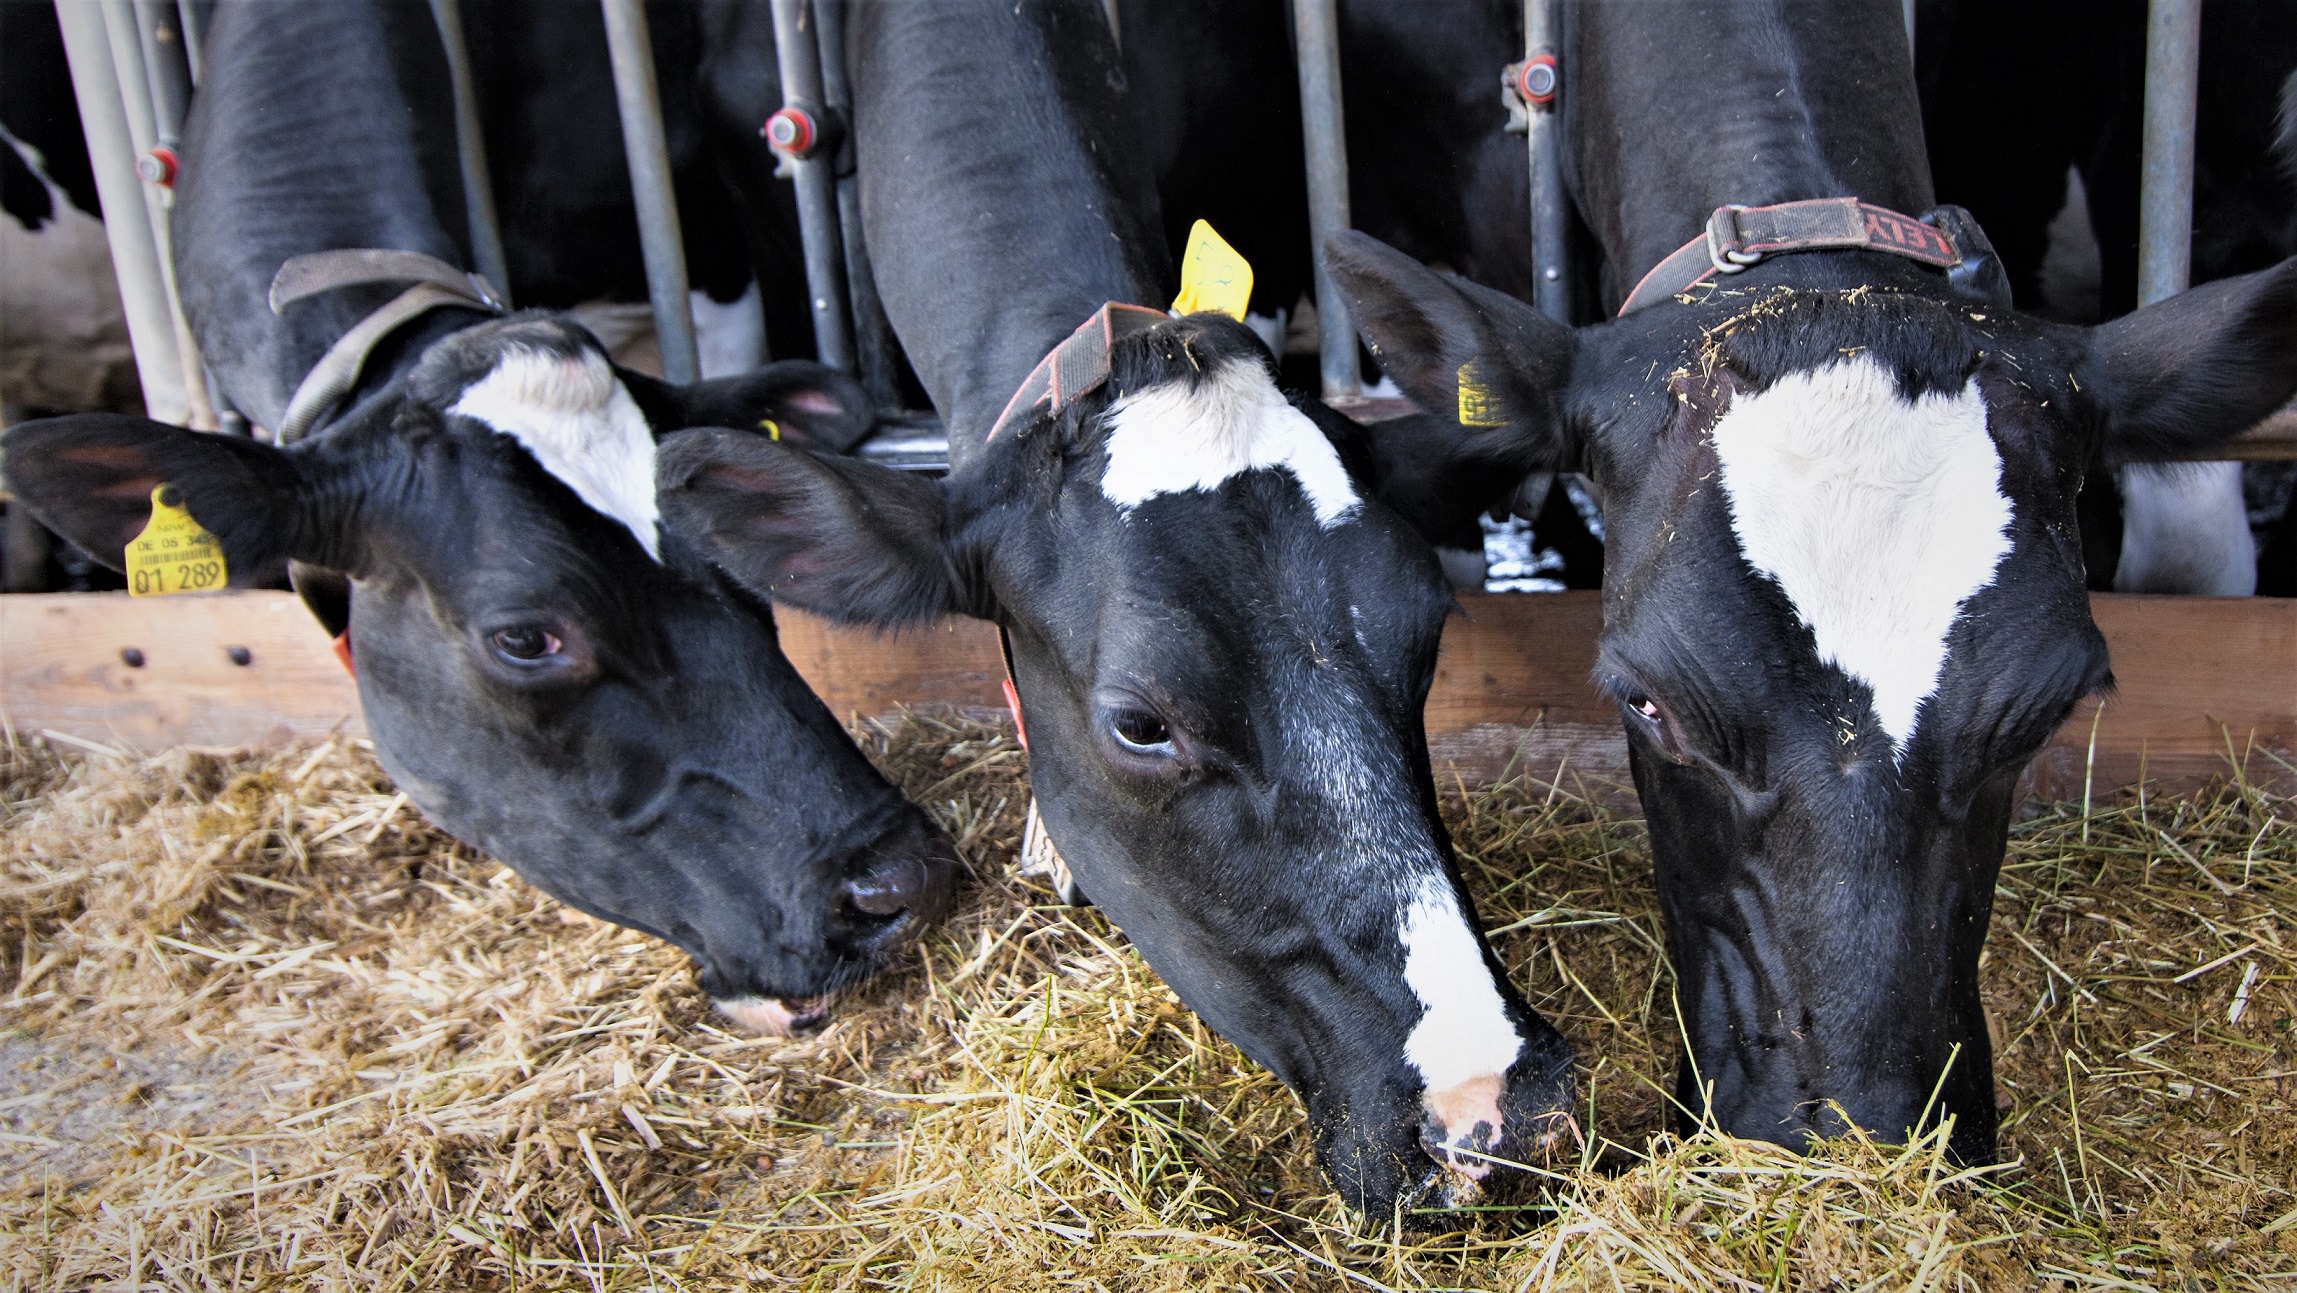 Køer i en stald spiser foder